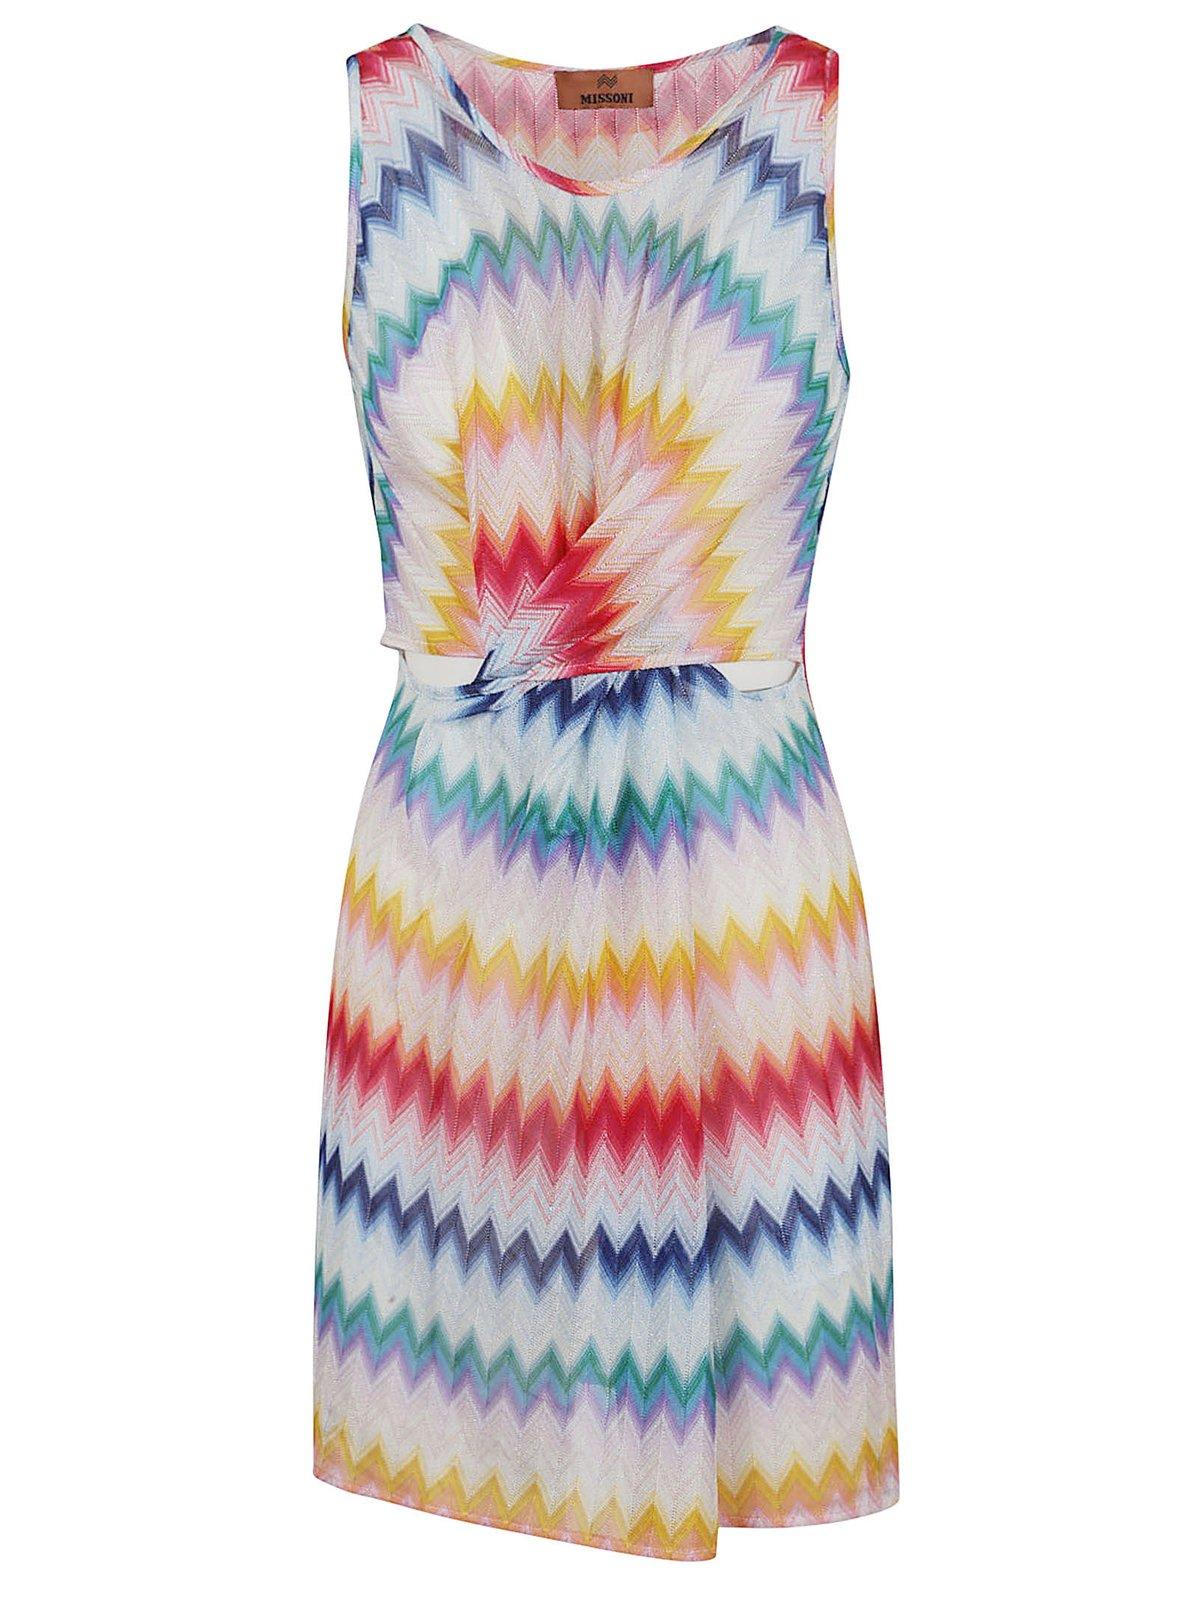 Zigzag Printed Twist Detailed Mini Dress